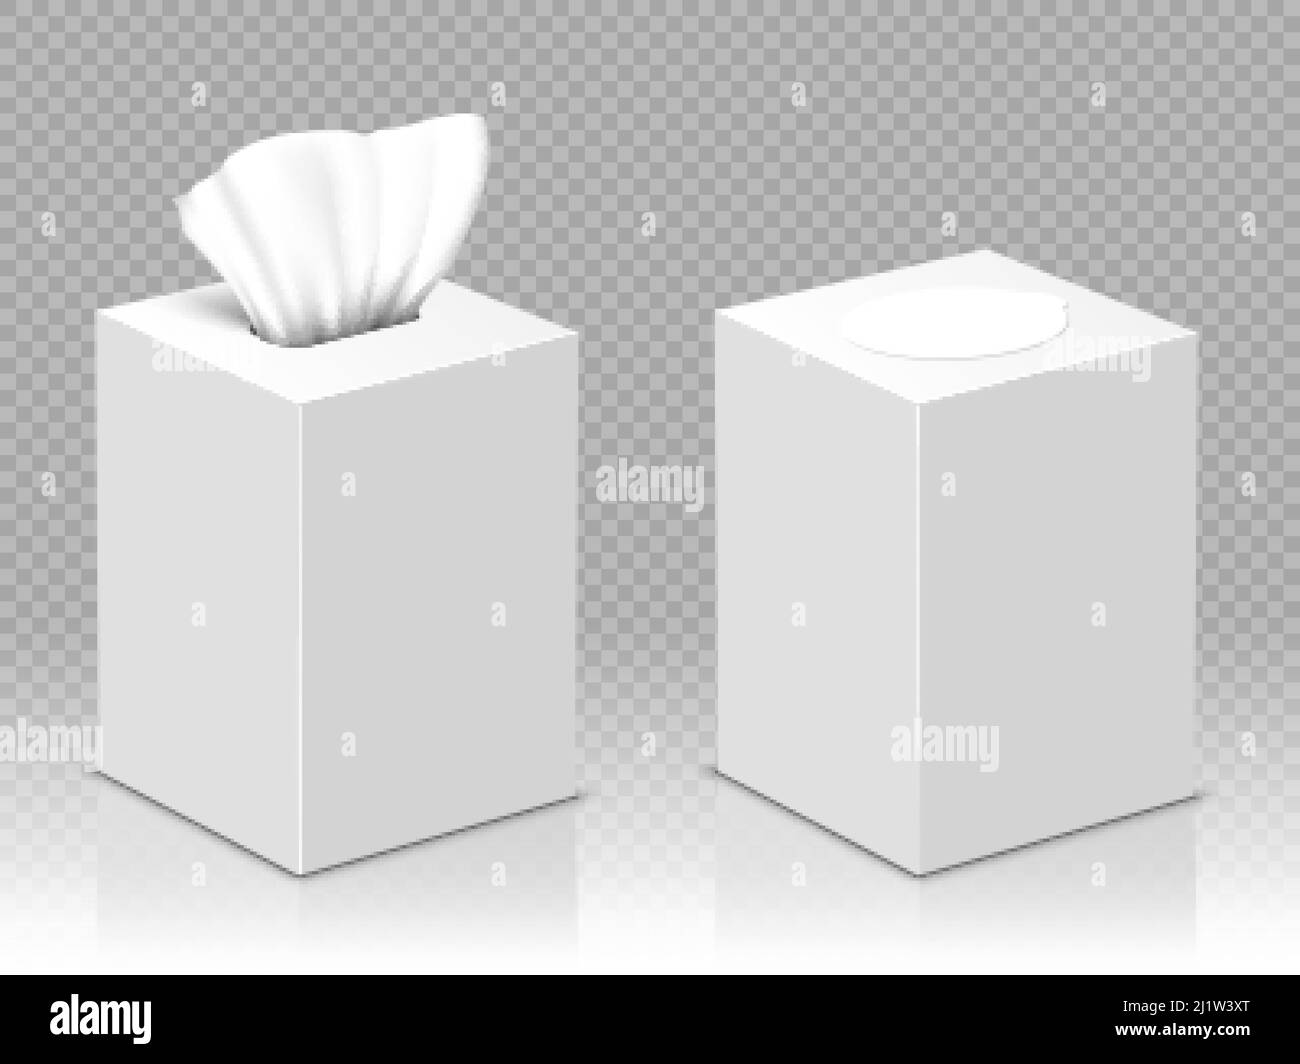 Pañuelos Desechables De Papel En Una Caja Sobre Un Fondo Blanco Por  Enfermedad Imagen de archivo - Imagen de suave, blanco: 214980681